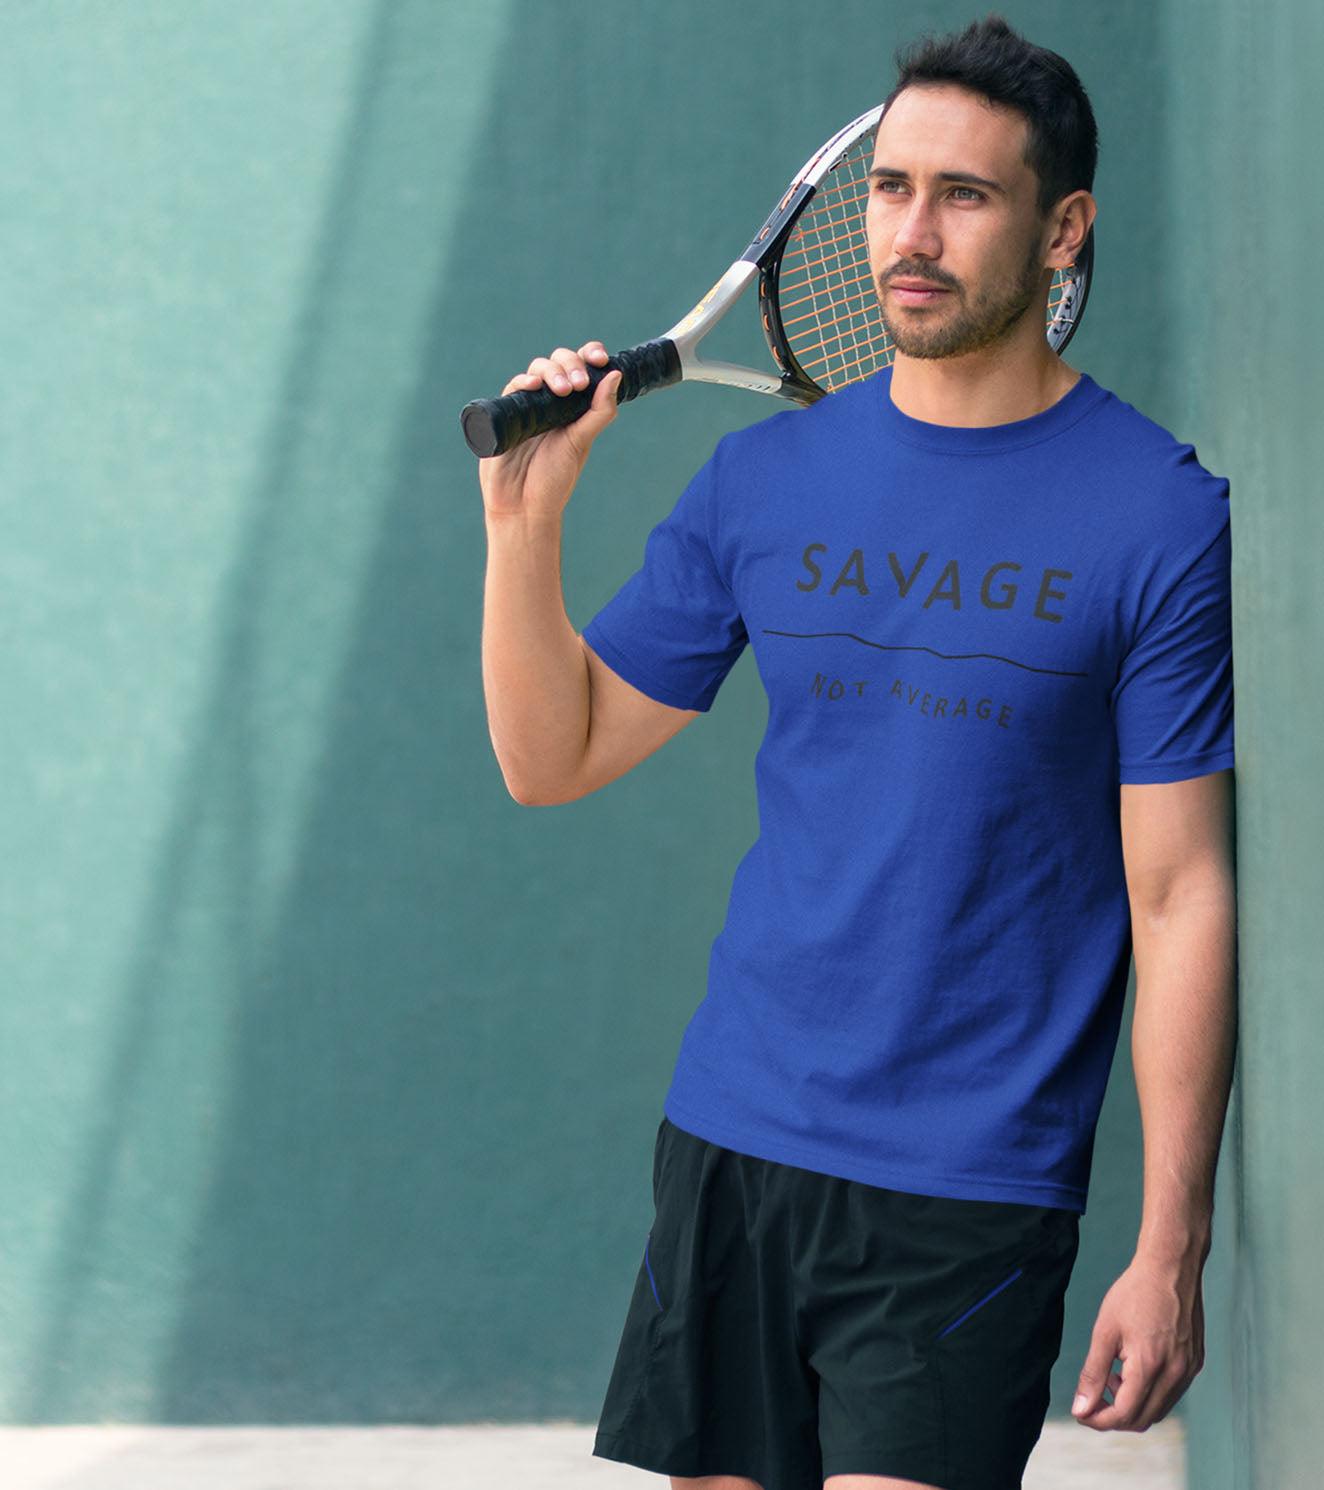 Men's "SAVAGE NOT AVERAGE" T-Shirt - wodarmour